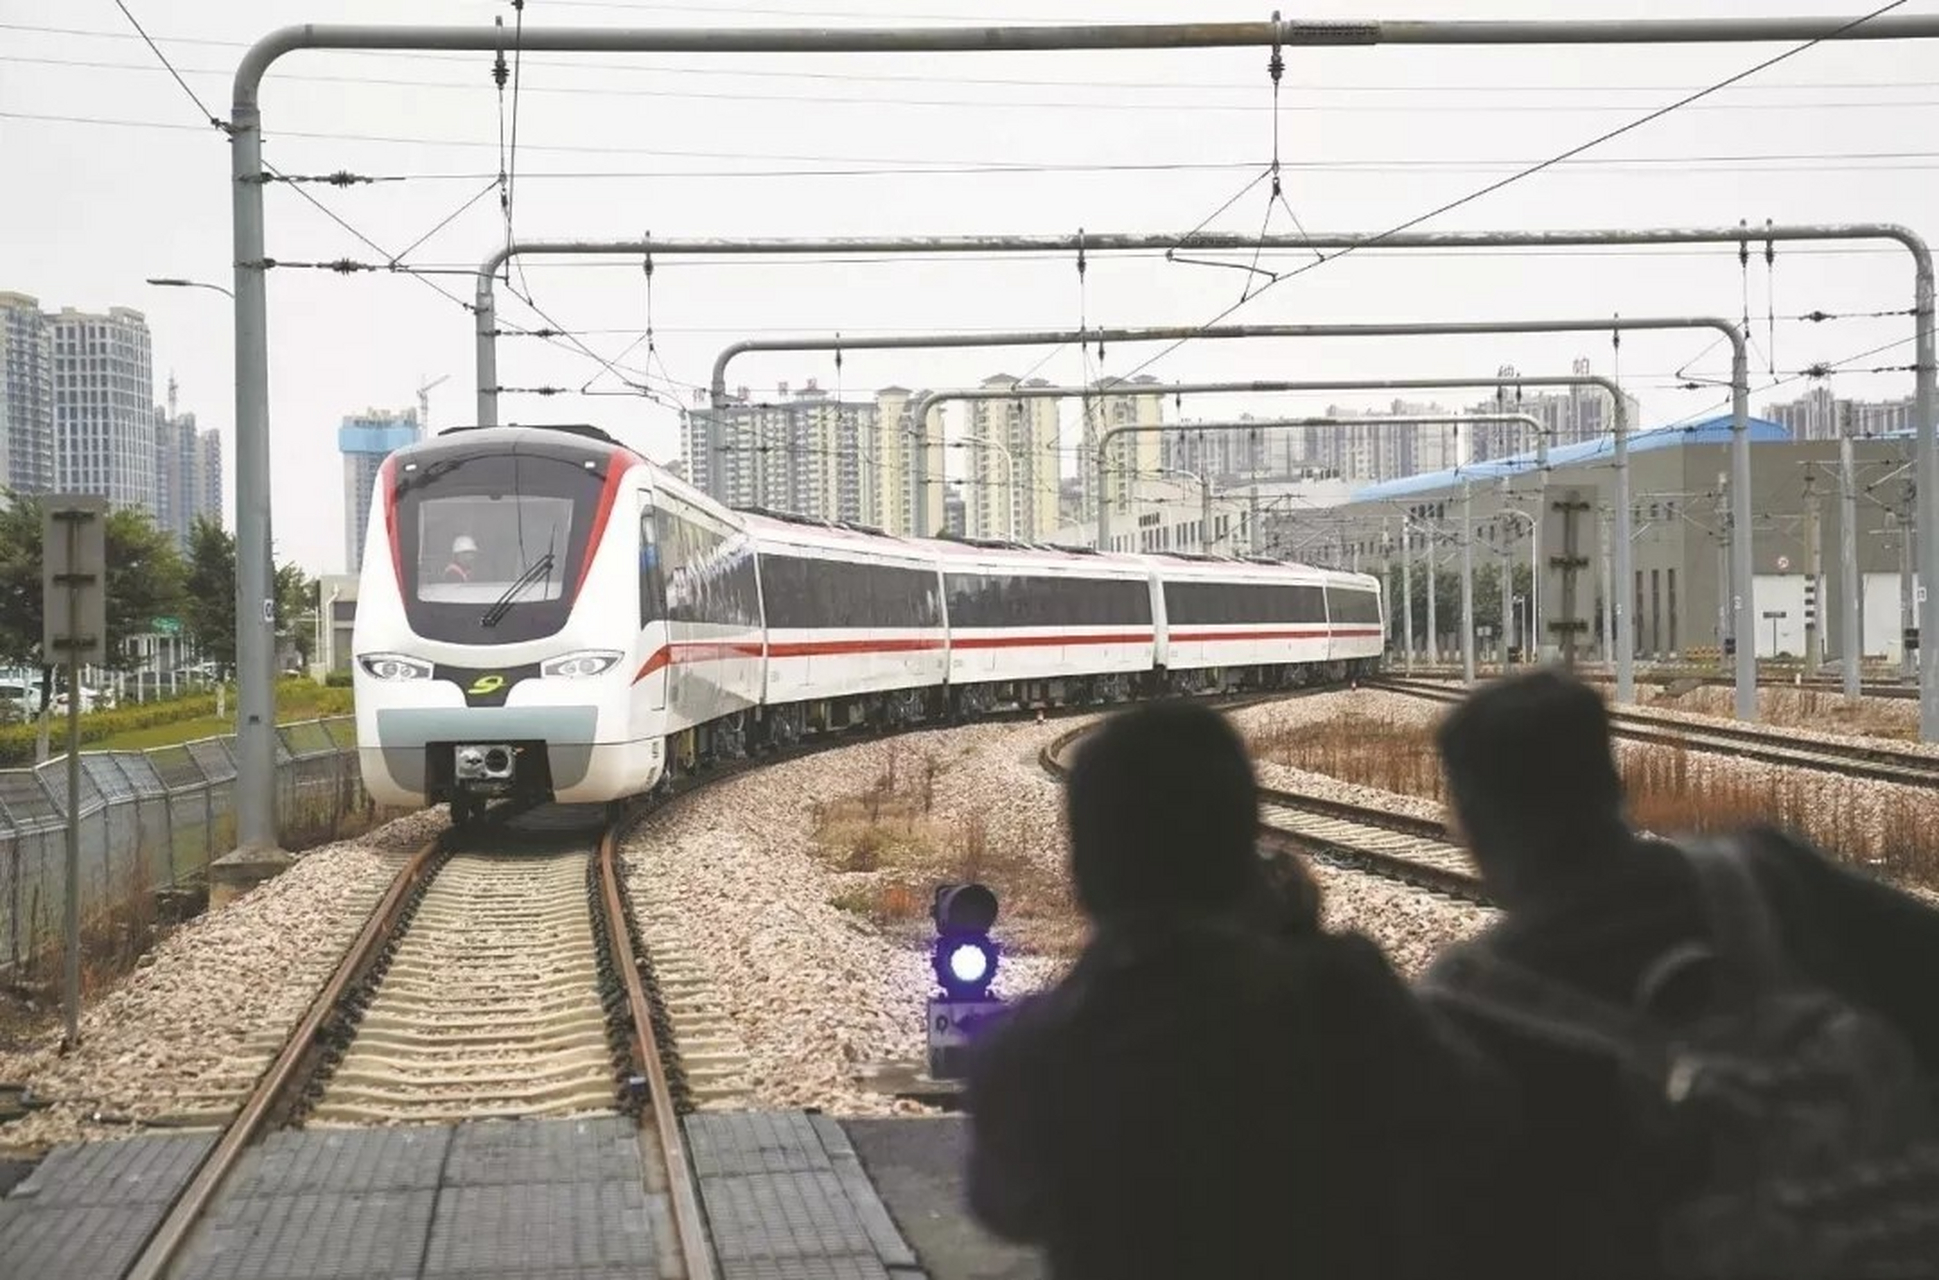 晋升新一线城市的东莞,在2016年迎来了东莞第一条地铁——地铁2号线